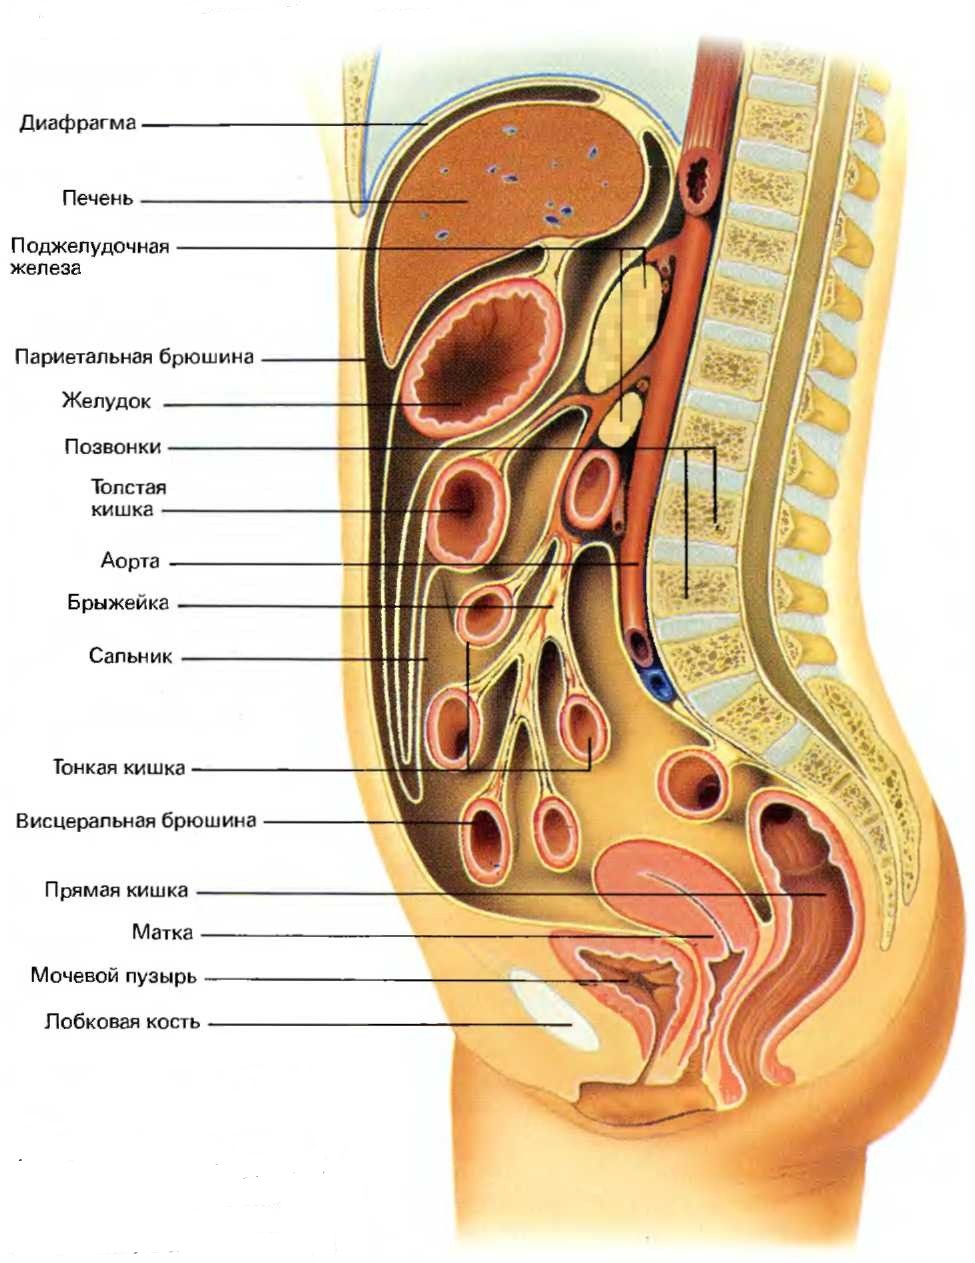 Органы брюшной полости в продольном разрезе с диаграммой, показывающей два типа брюшины - висцеральную и париетальную